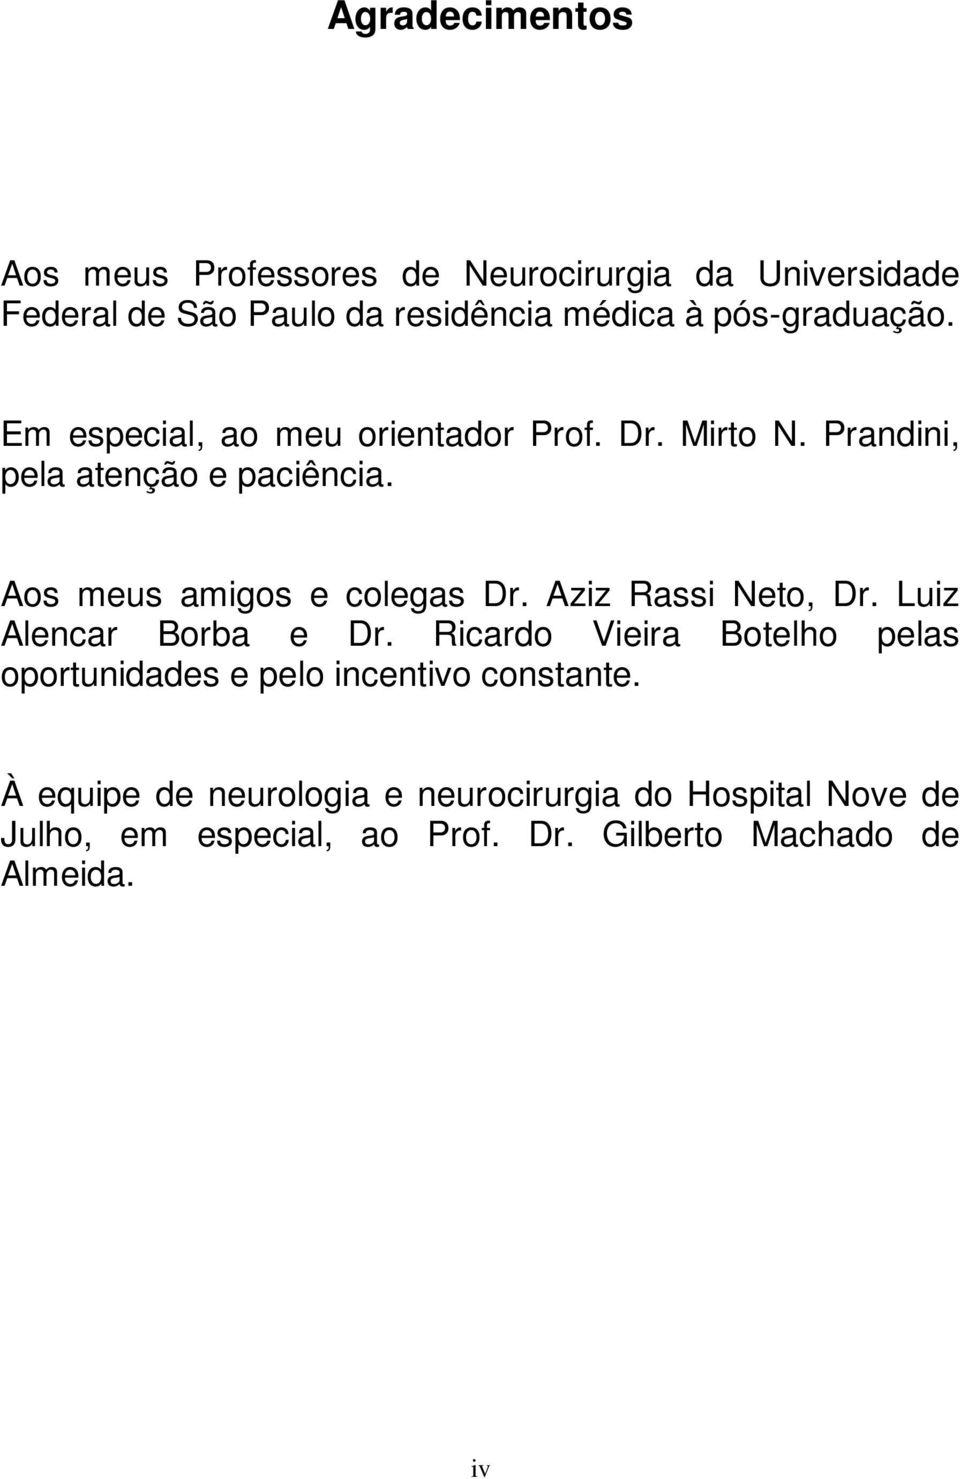 Aos meus amigos e colegas Dr. Aziz Rassi Neto, Dr. Luiz Alencar Borba e Dr.